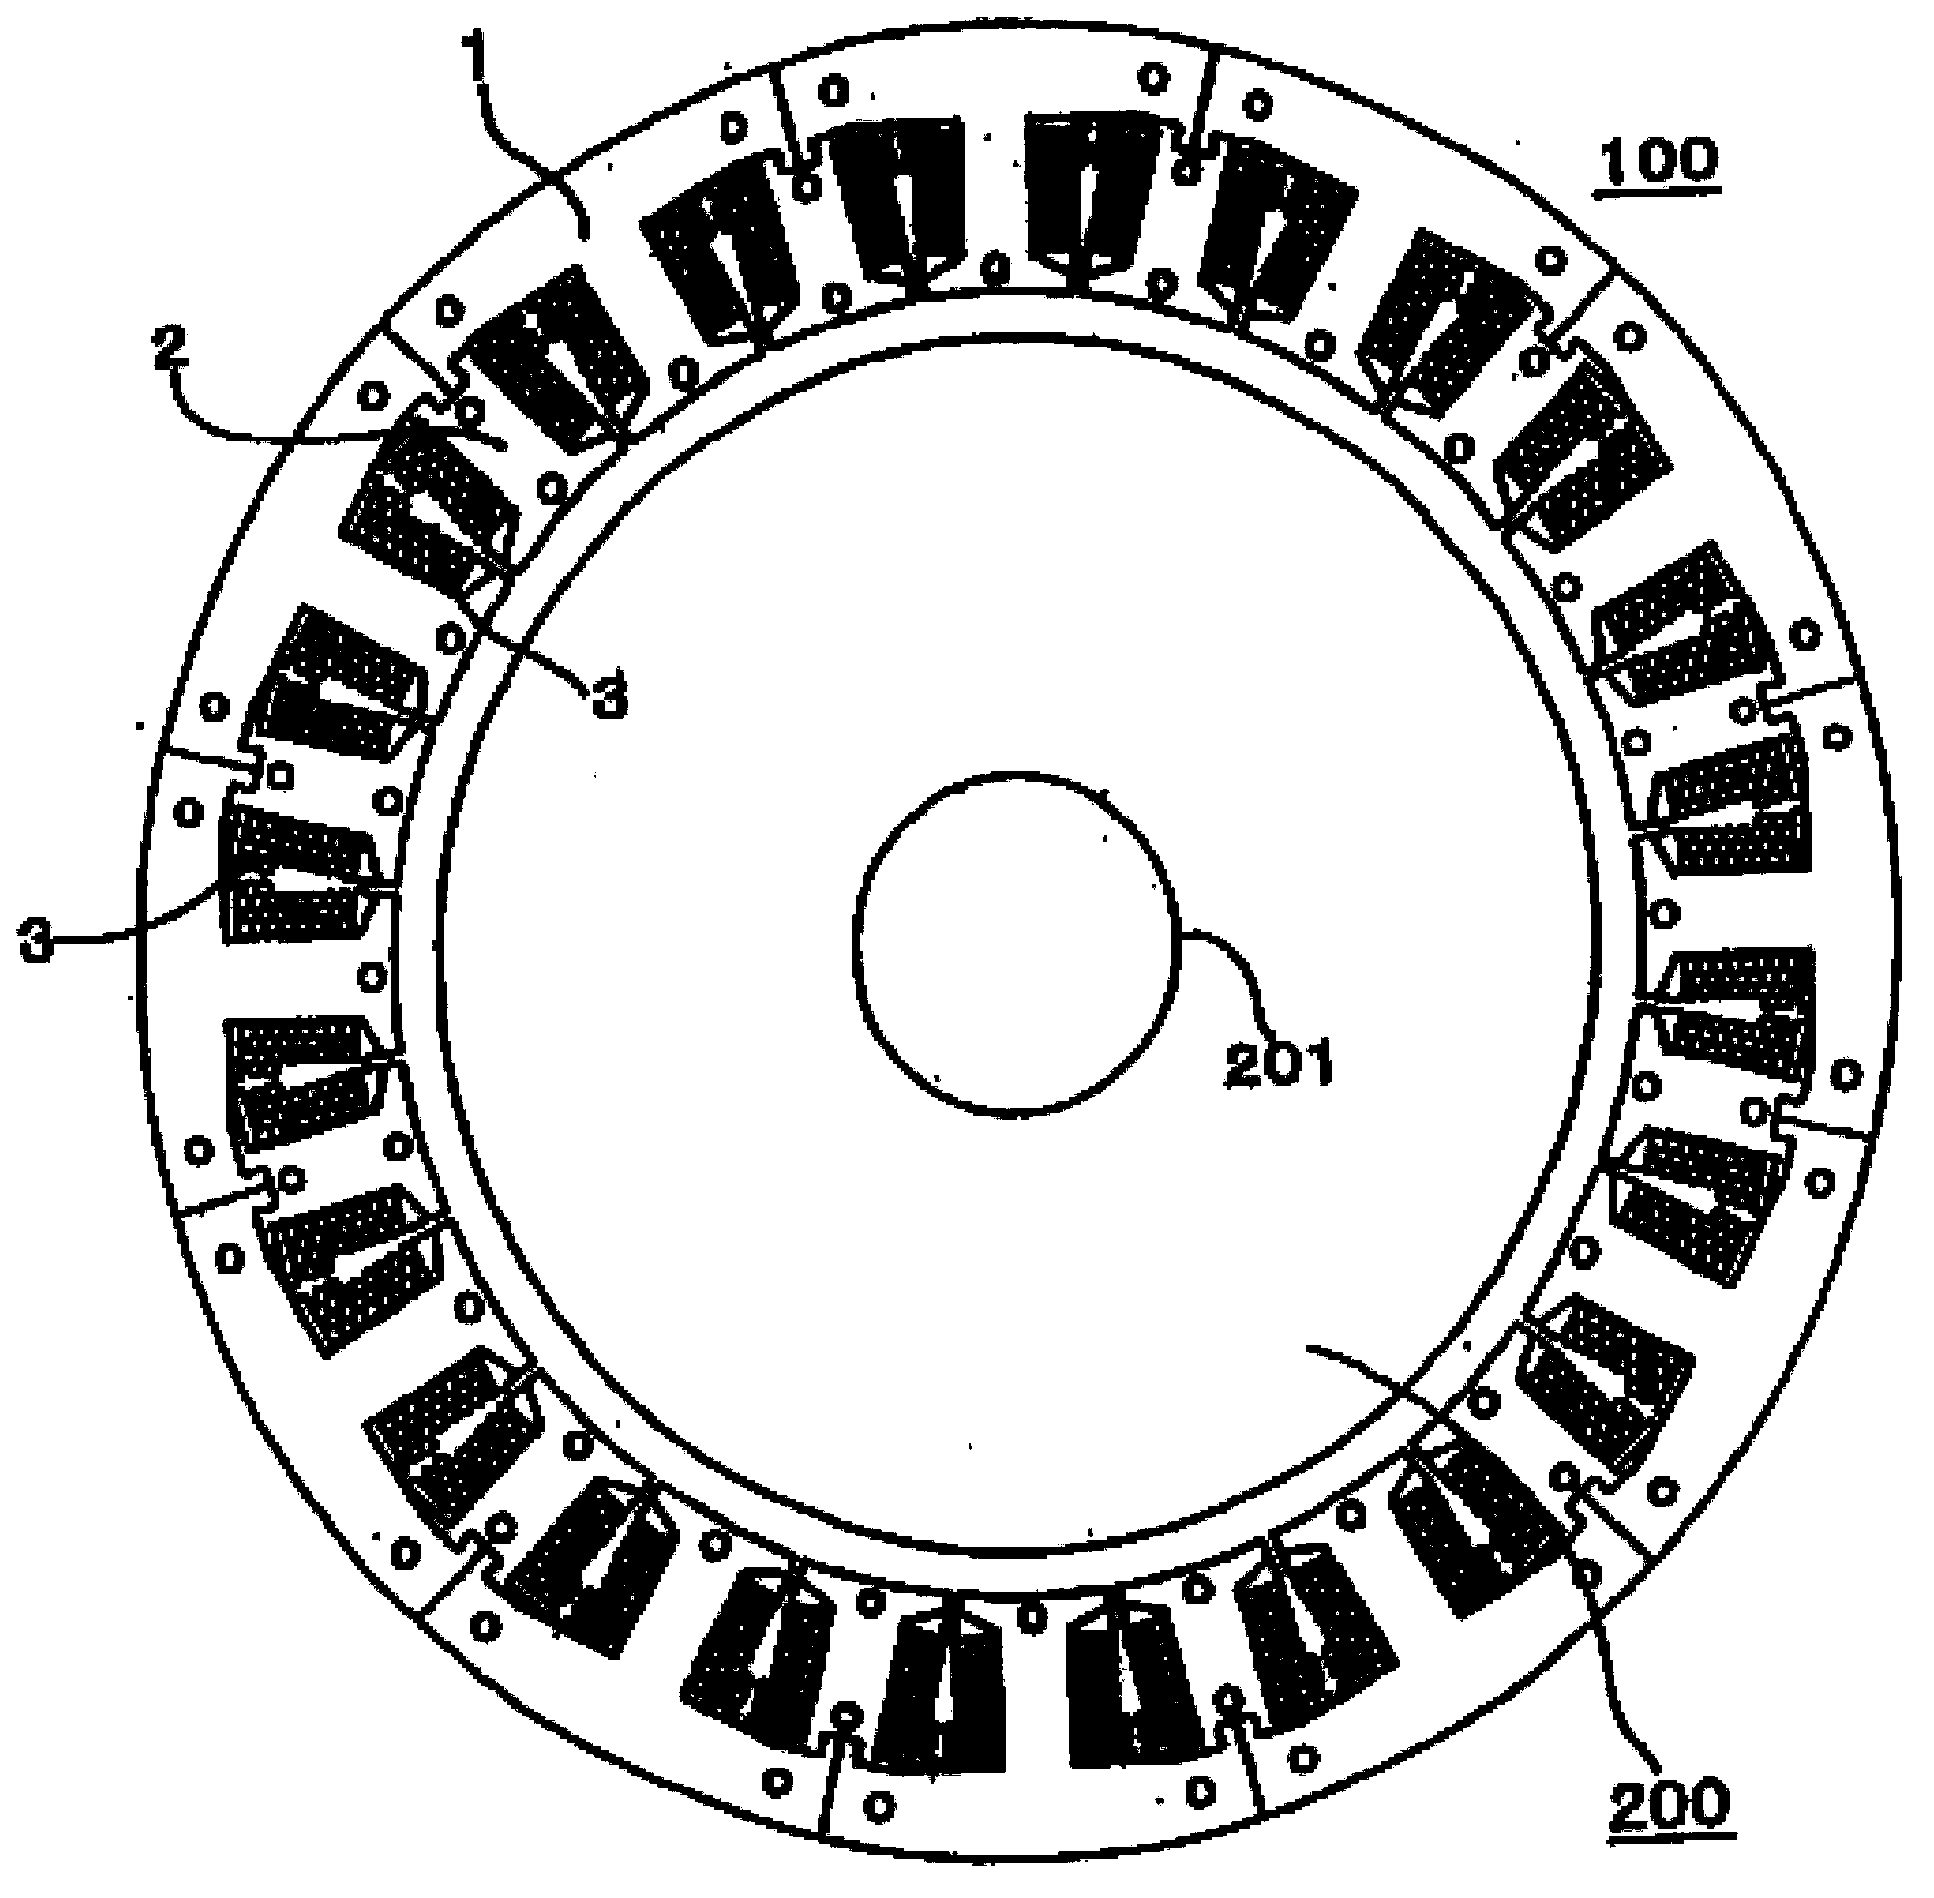 Stator of rotary motor